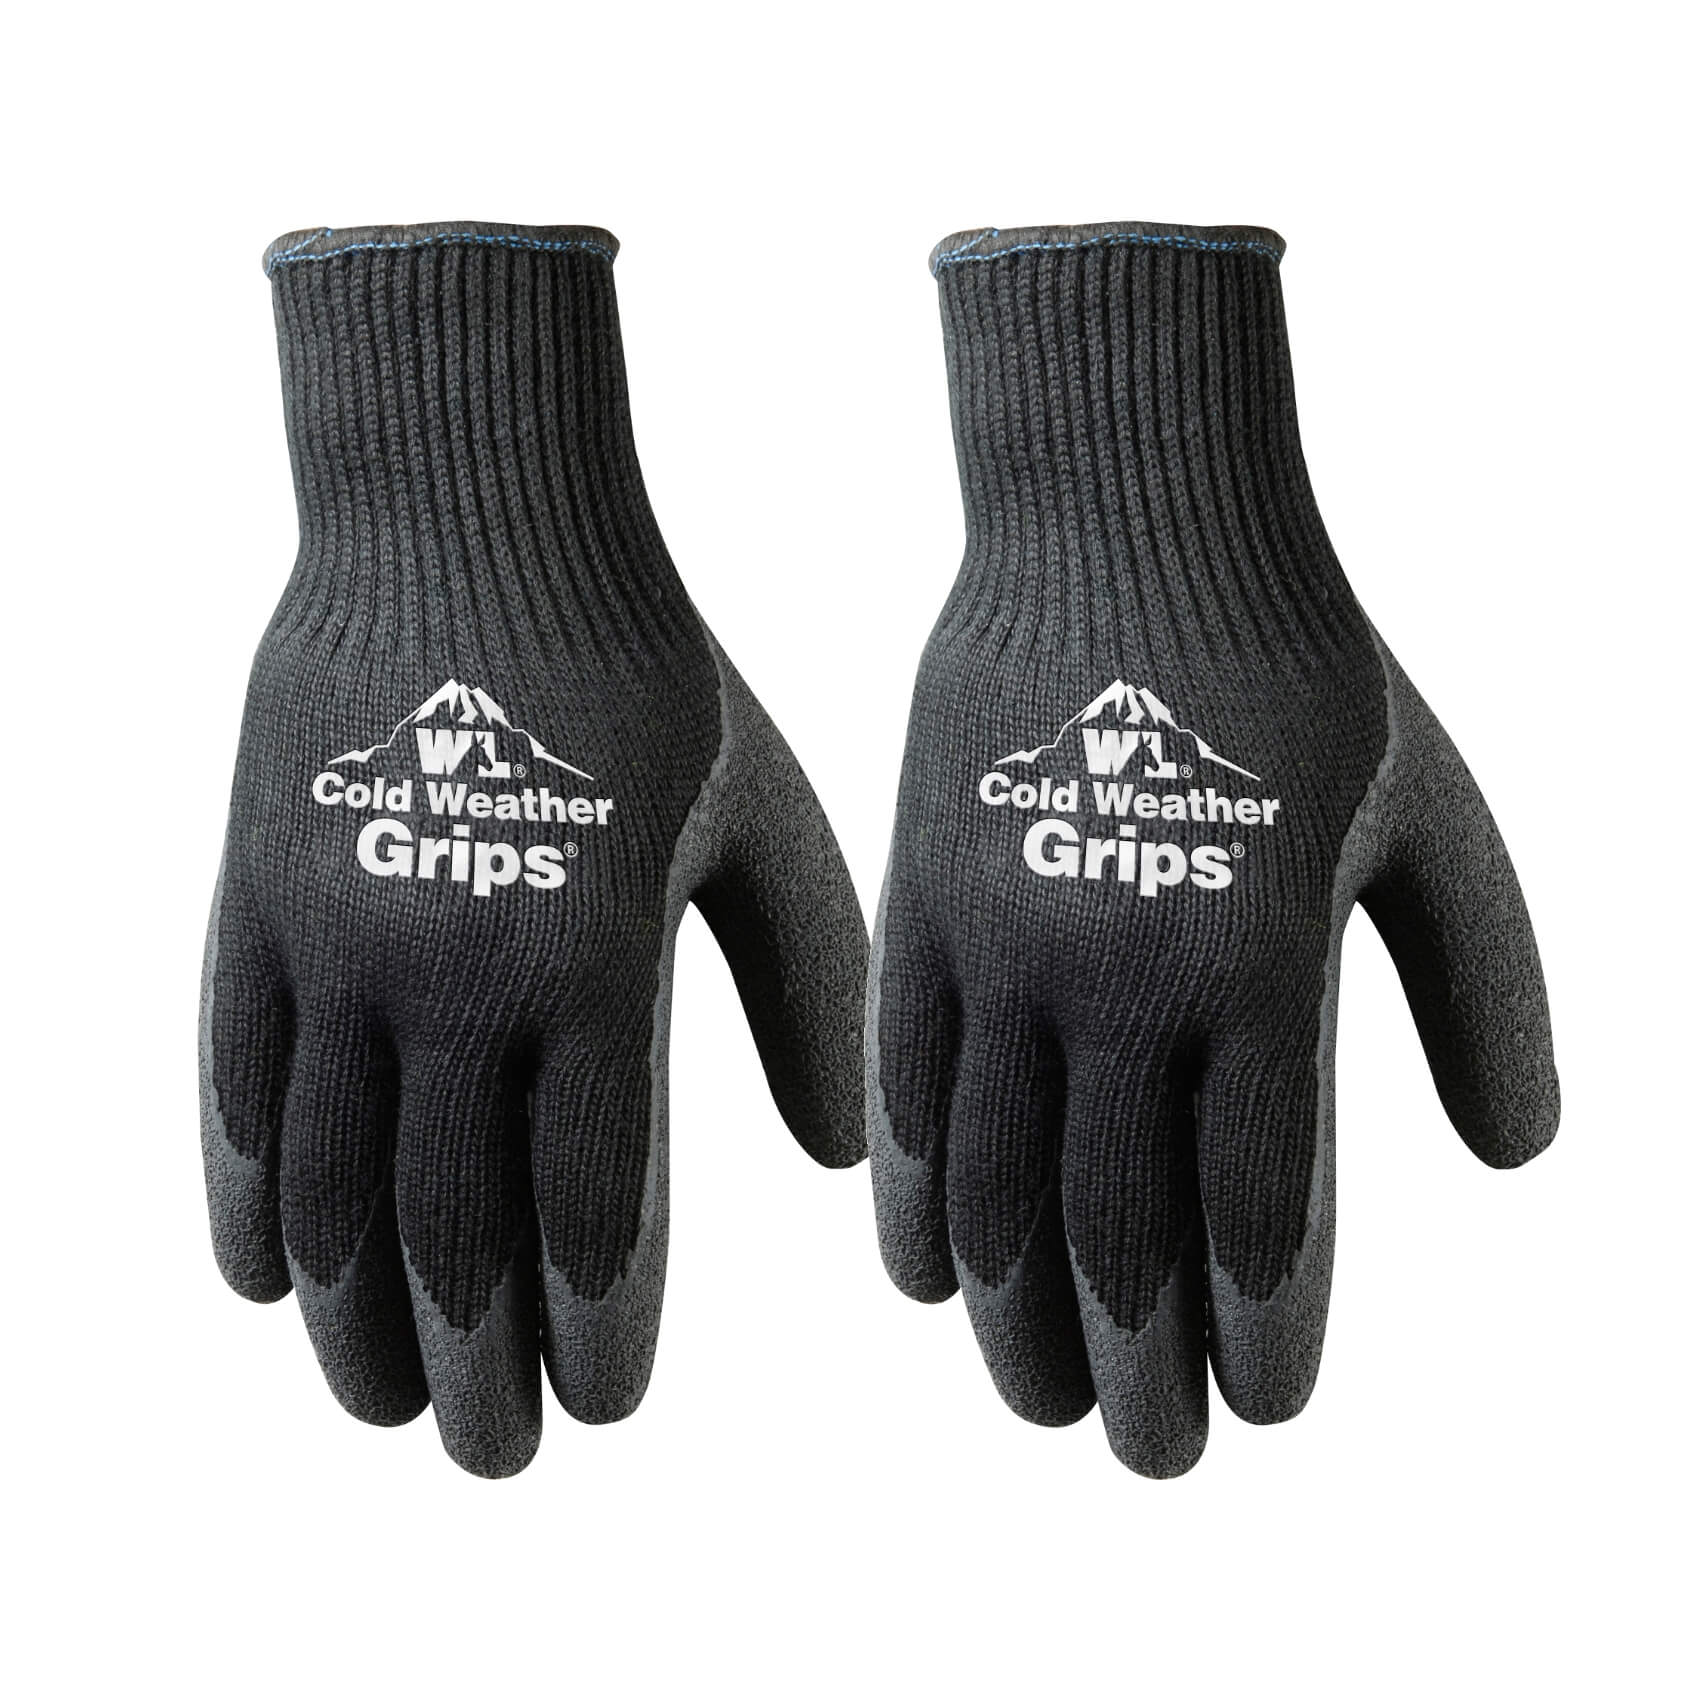 Wells Lamont 2-Pair Pack Cold Weather Latex Grip Versatile Winter Work Gloves - Work World - Workwear, Work Boots, Safety Gear